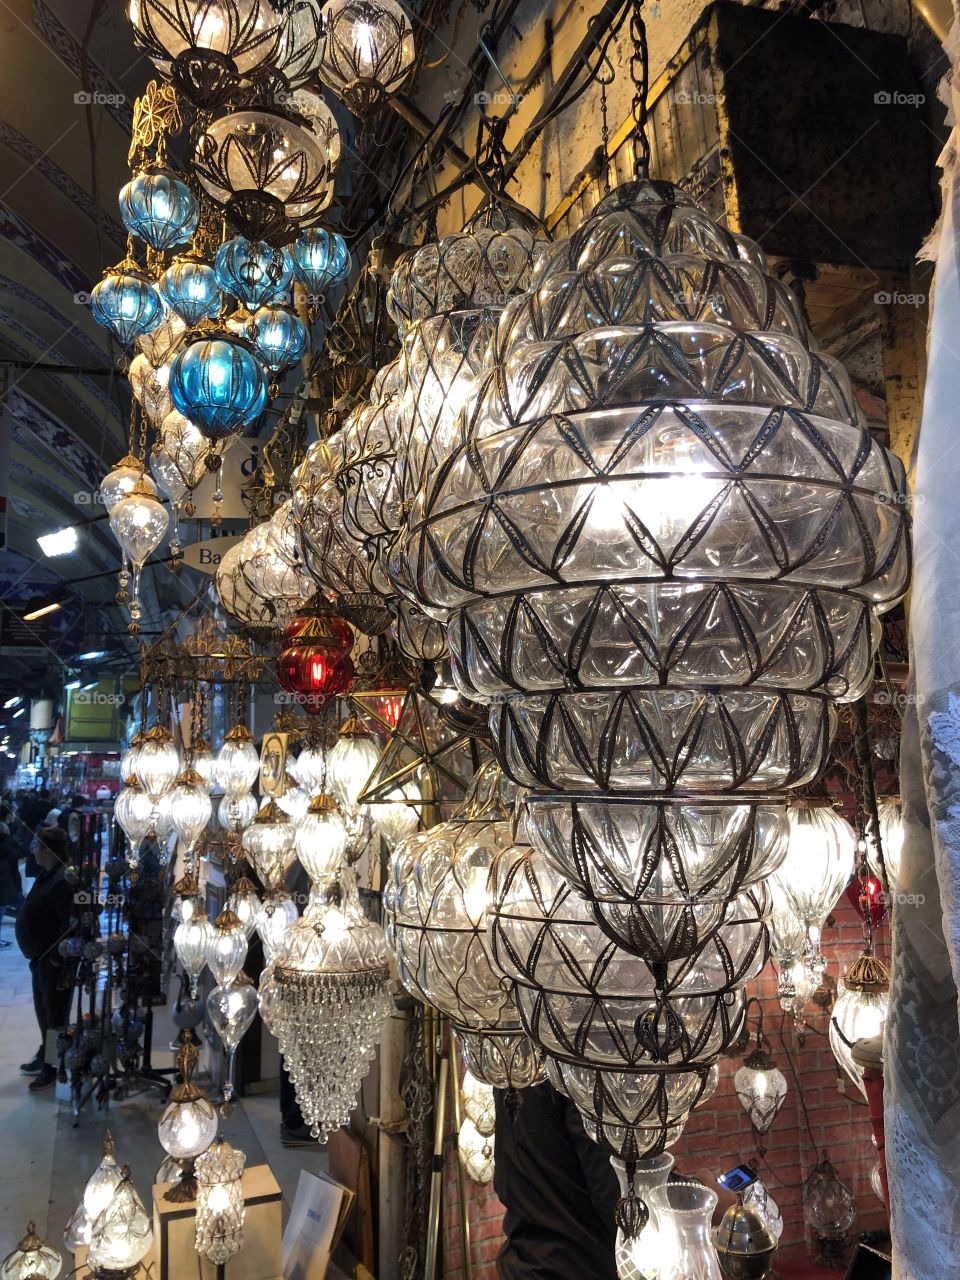 Turkish lamps in the indoor market of Grand Bazaar, Istanbul, Turkey